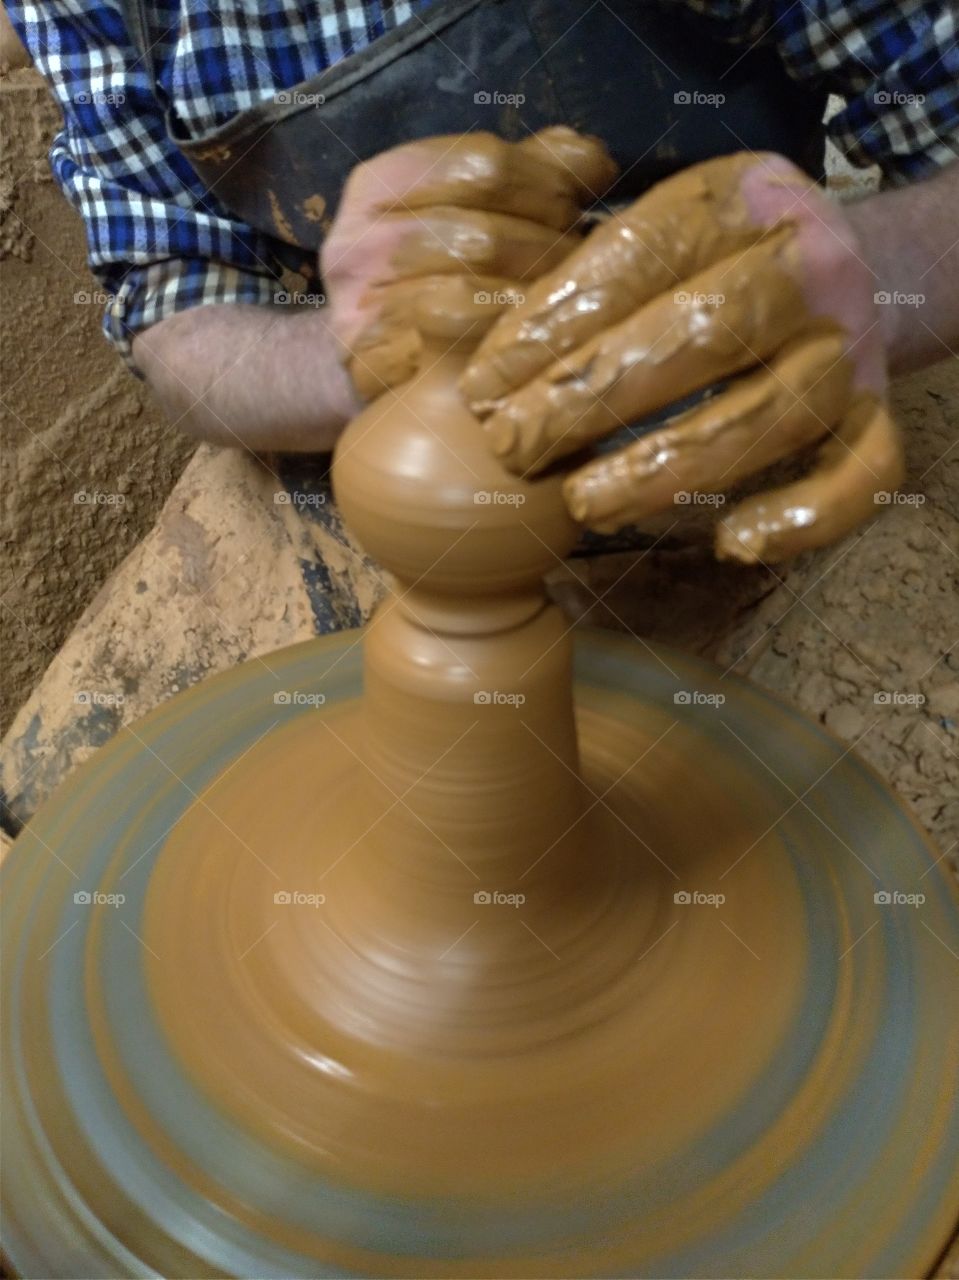 Manos de hombre artesano hacuebdo un objeto de barro